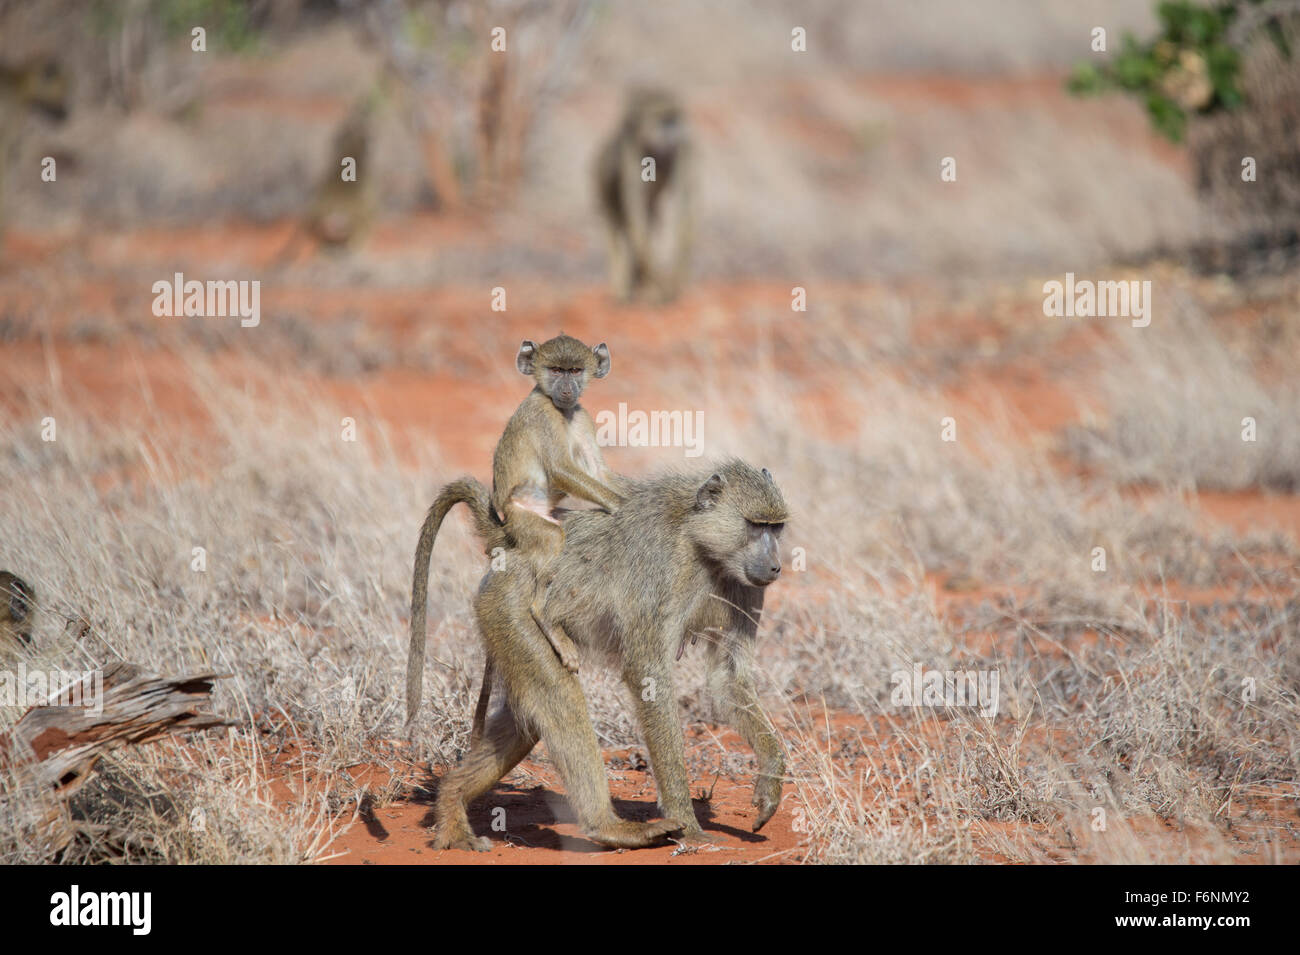 Le babouin, mère de cub, l'Est de Tsavo national park, Kenya Banque D'Images